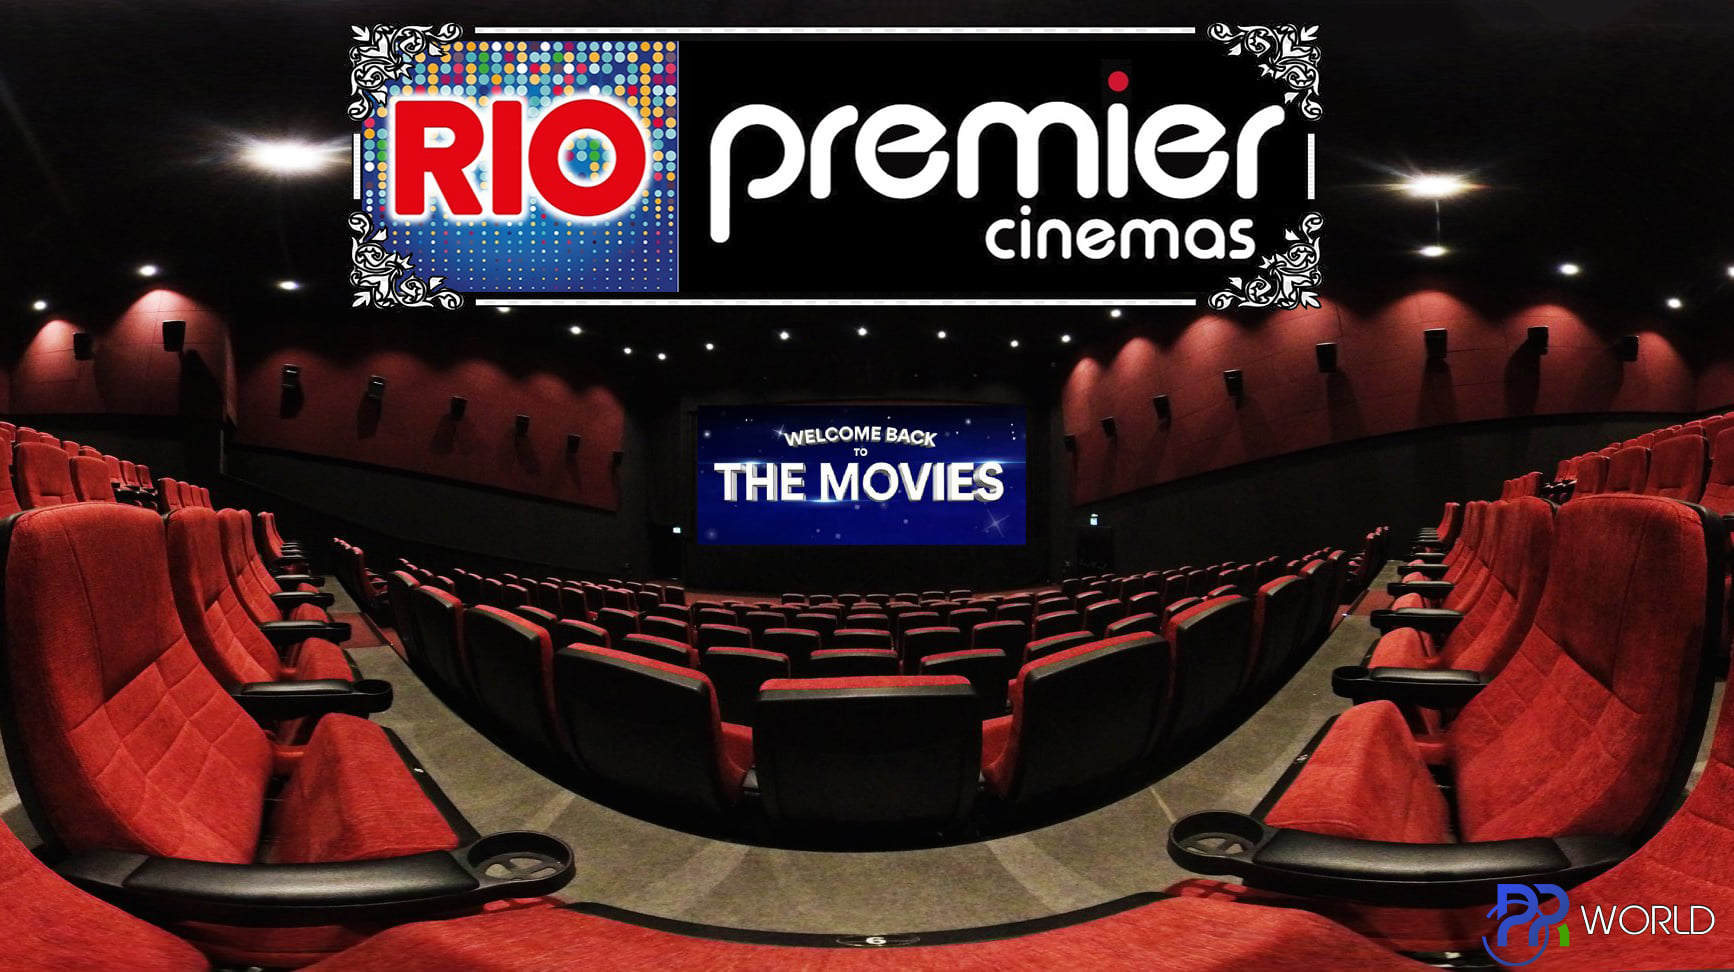 rio-premier-cinemas-gameworld-new-movies-nees-tainies.jpg